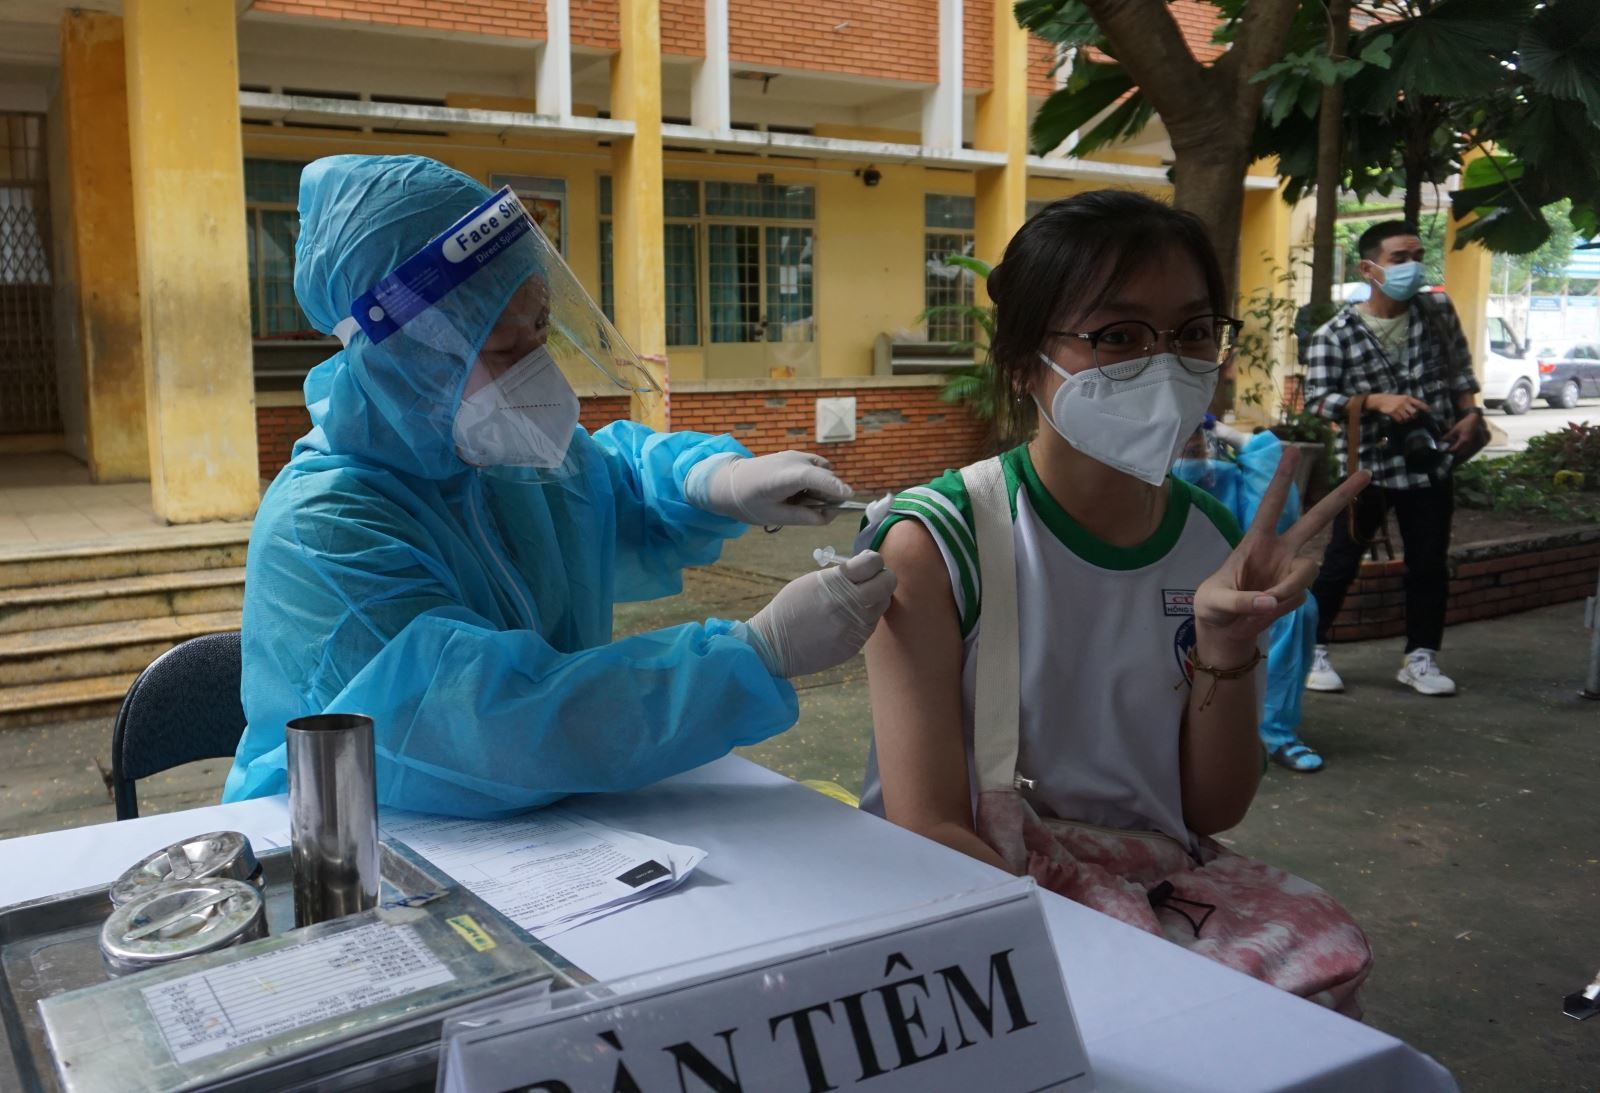 Sáng nay học sinh THPT tại Hà Nội bắt đầu được tiêm vắc xin